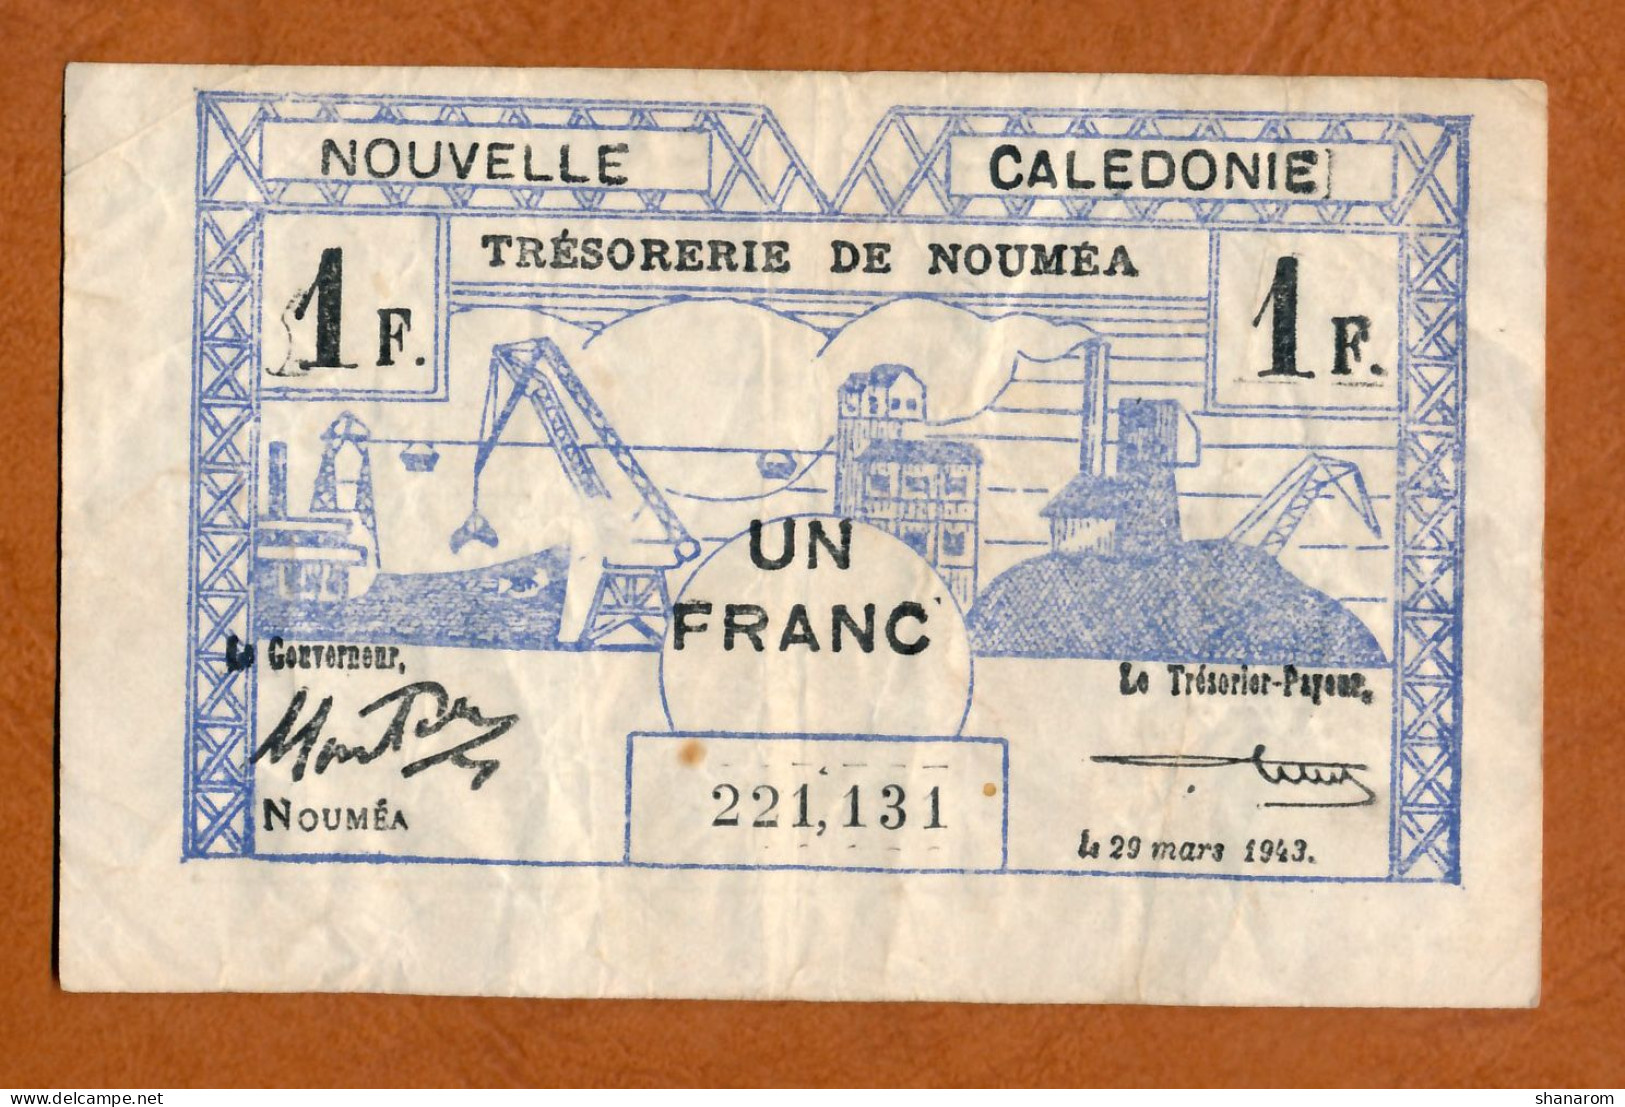 1943 // NOUVELLE CALEDONIE // TRESORERIE DE NOUMEA // Mars 1943 // Un Franc // VF / TTB - Nouvelle-Calédonie 1873-1985